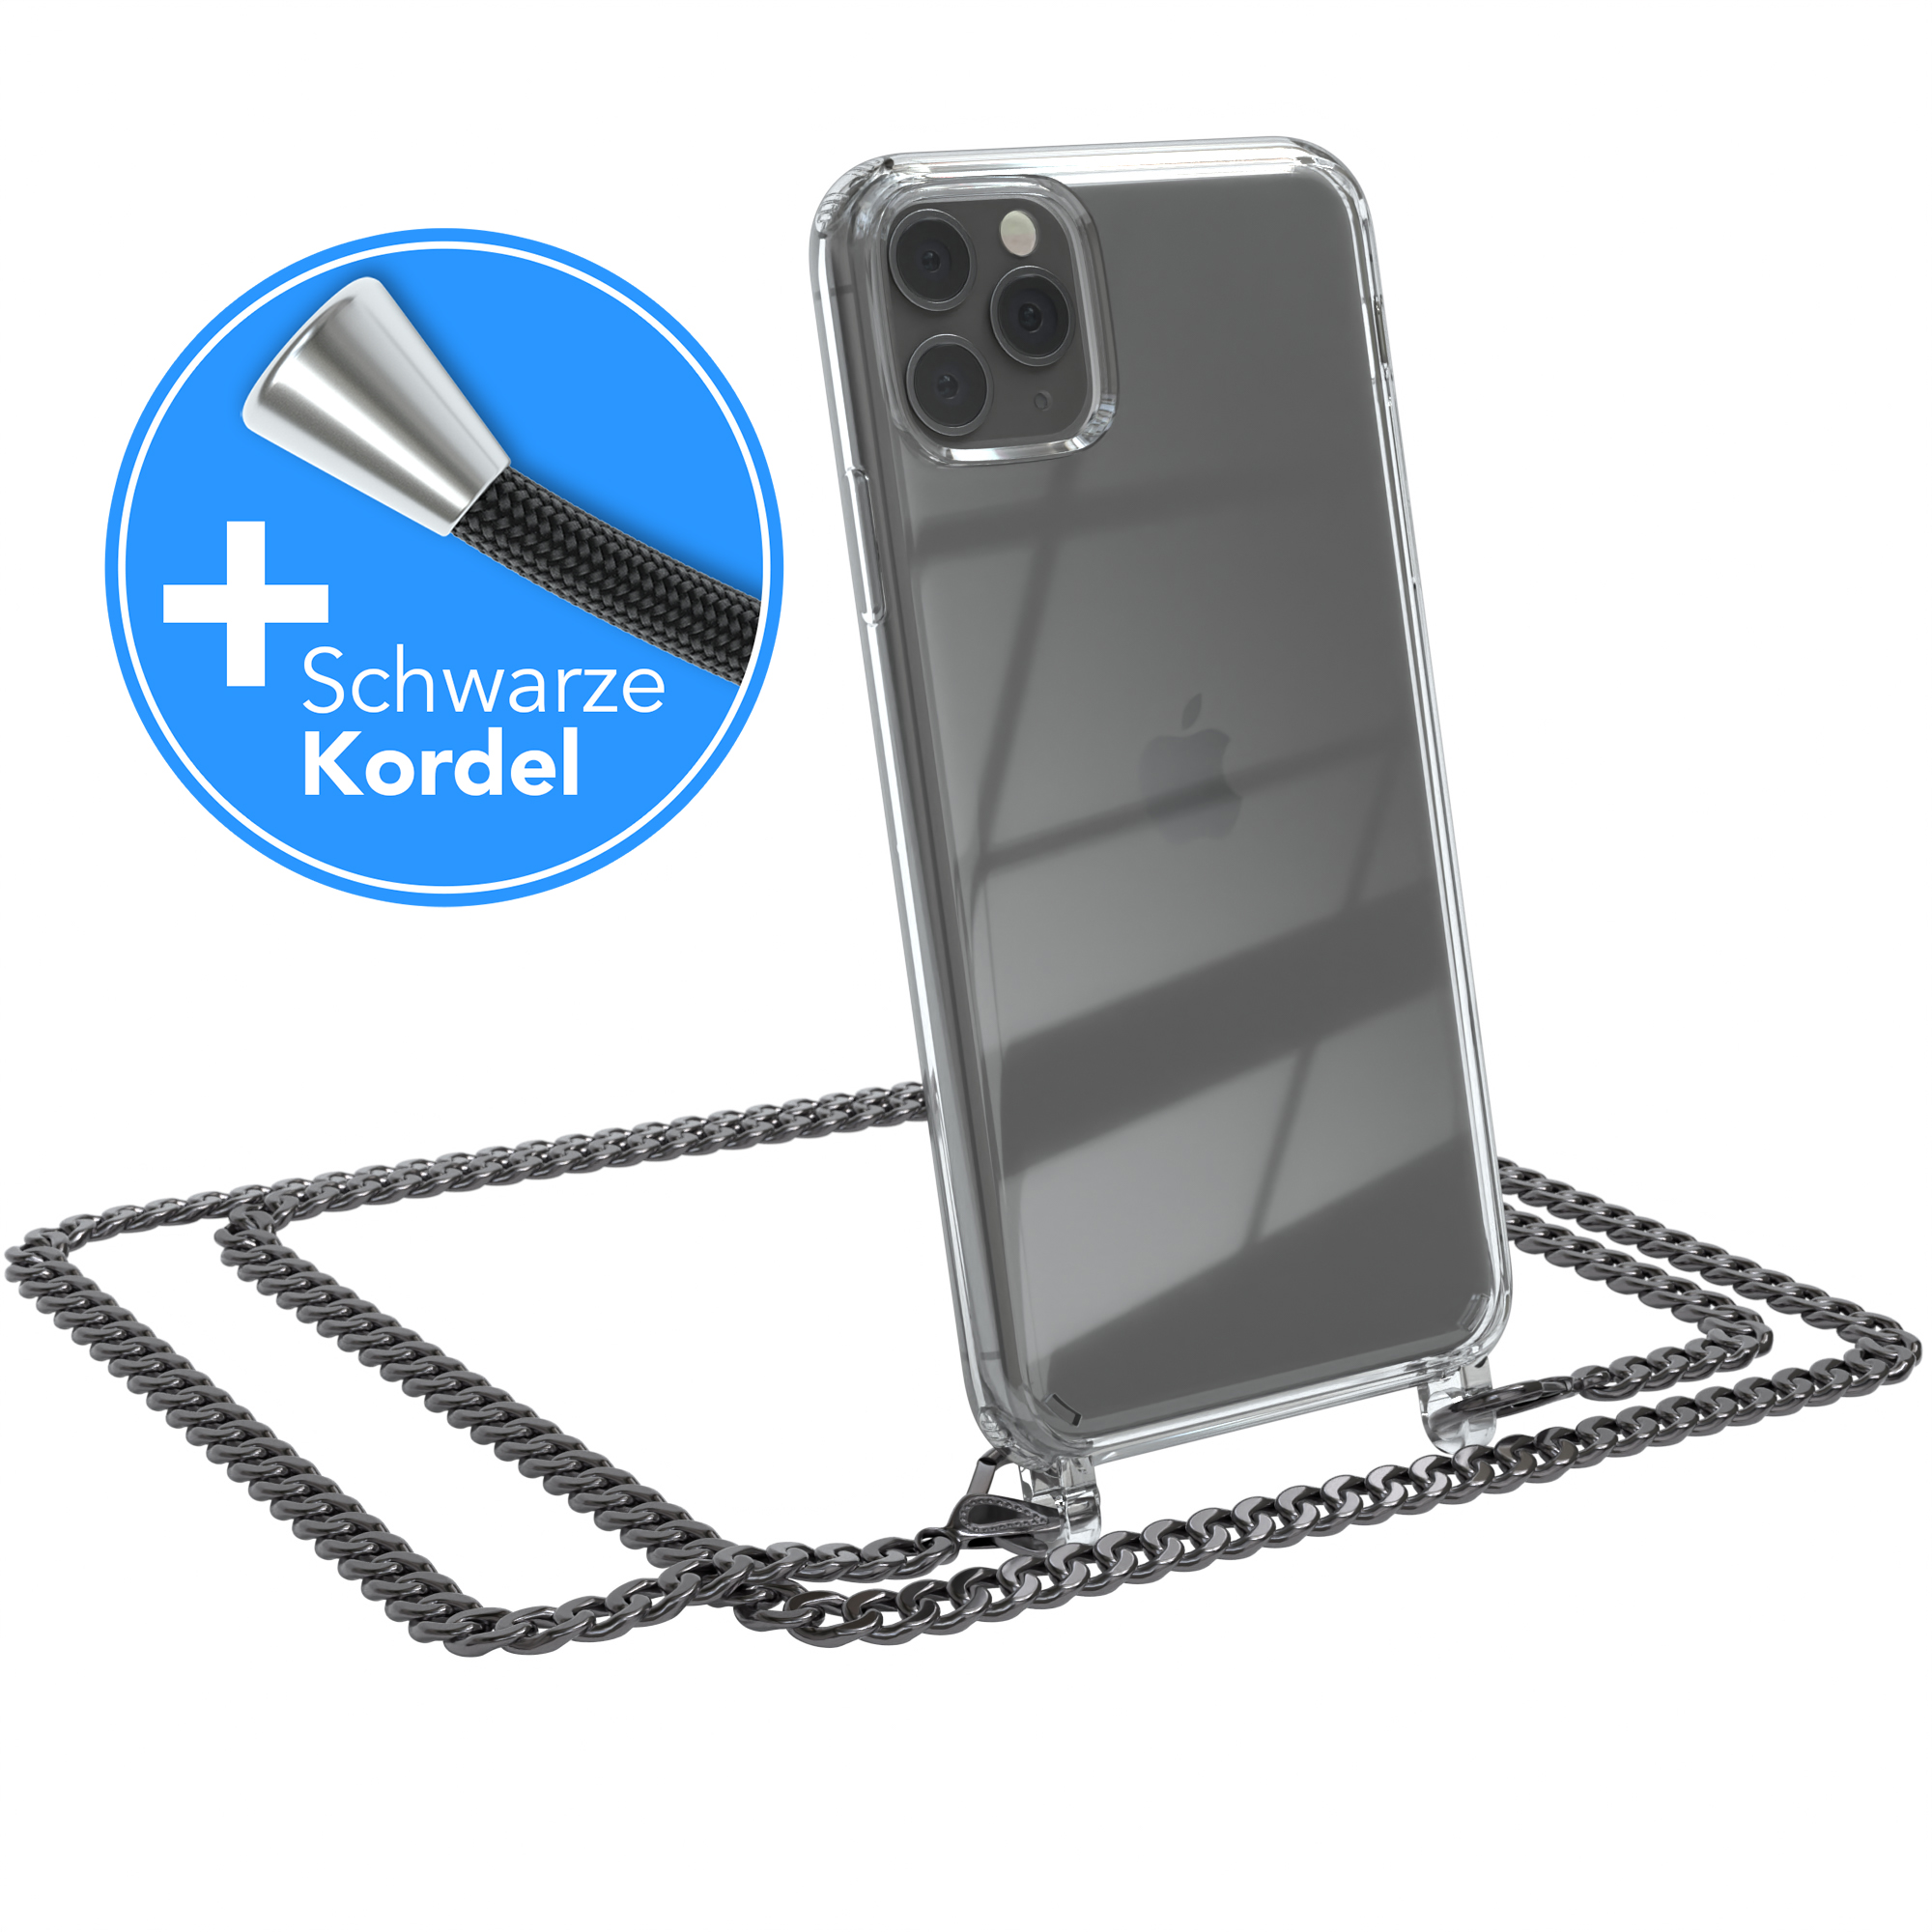 EAZY CASE 11 Pro Kordel Grau Max, Schwarz, extra Apple, Metall Anthrazit Umhängetasche, Handykette + iPhone